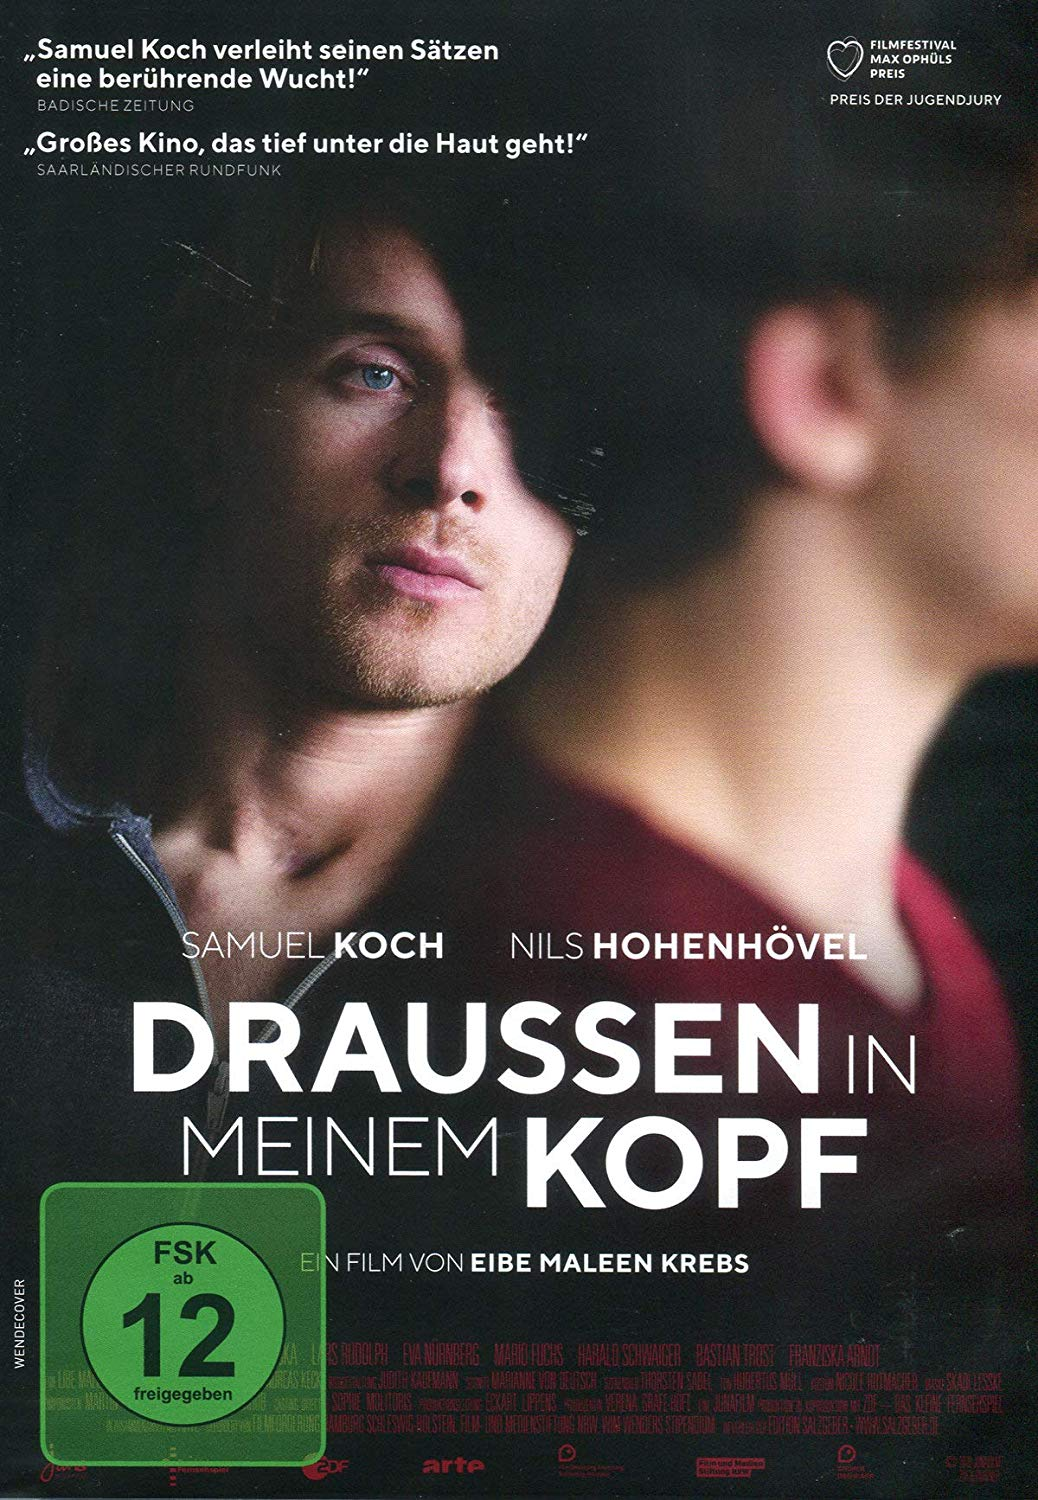 MEINEM KOPF DRAUSSEN DVD IN